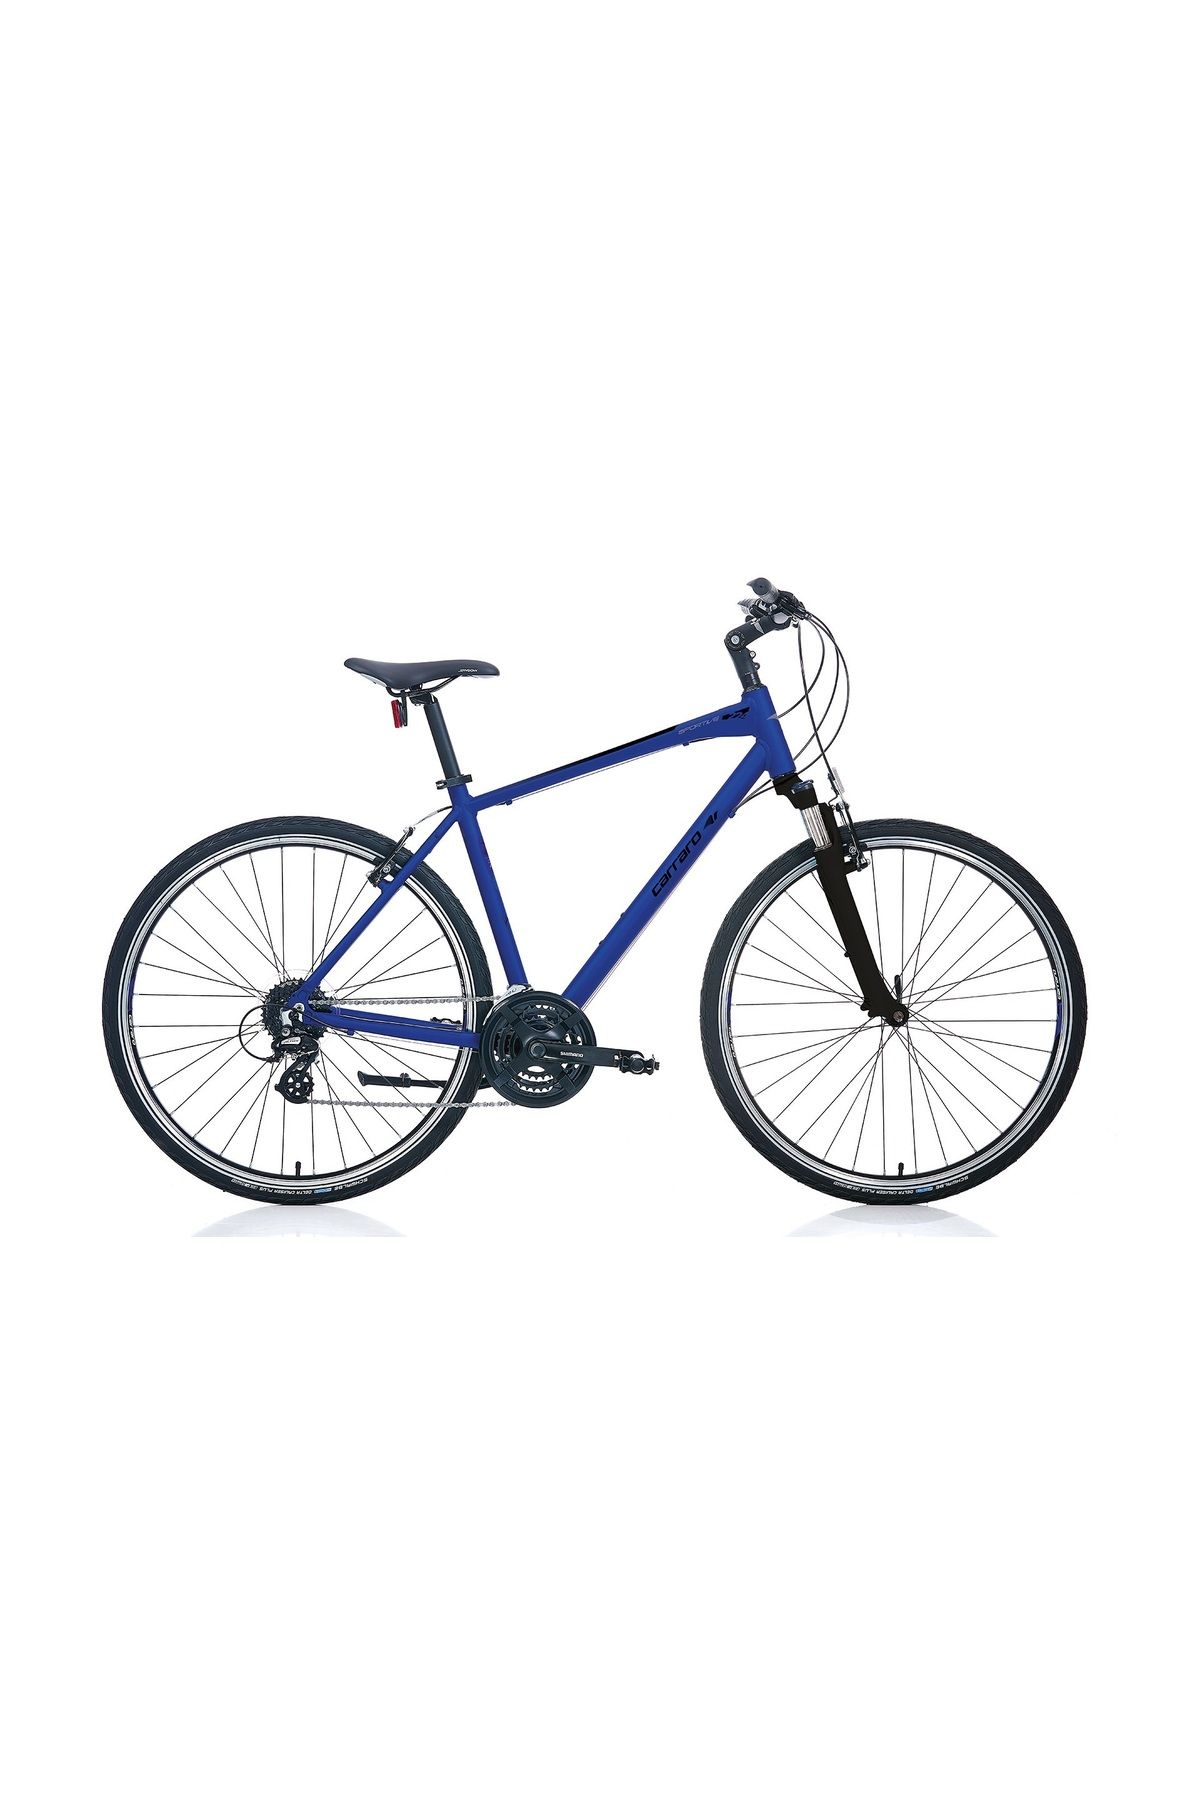 Carraro Sportıve 224 28 Jant 50cm Kadro 24 Vites Erkek Şehir Bisikleti Manyetik Mavi-siyah